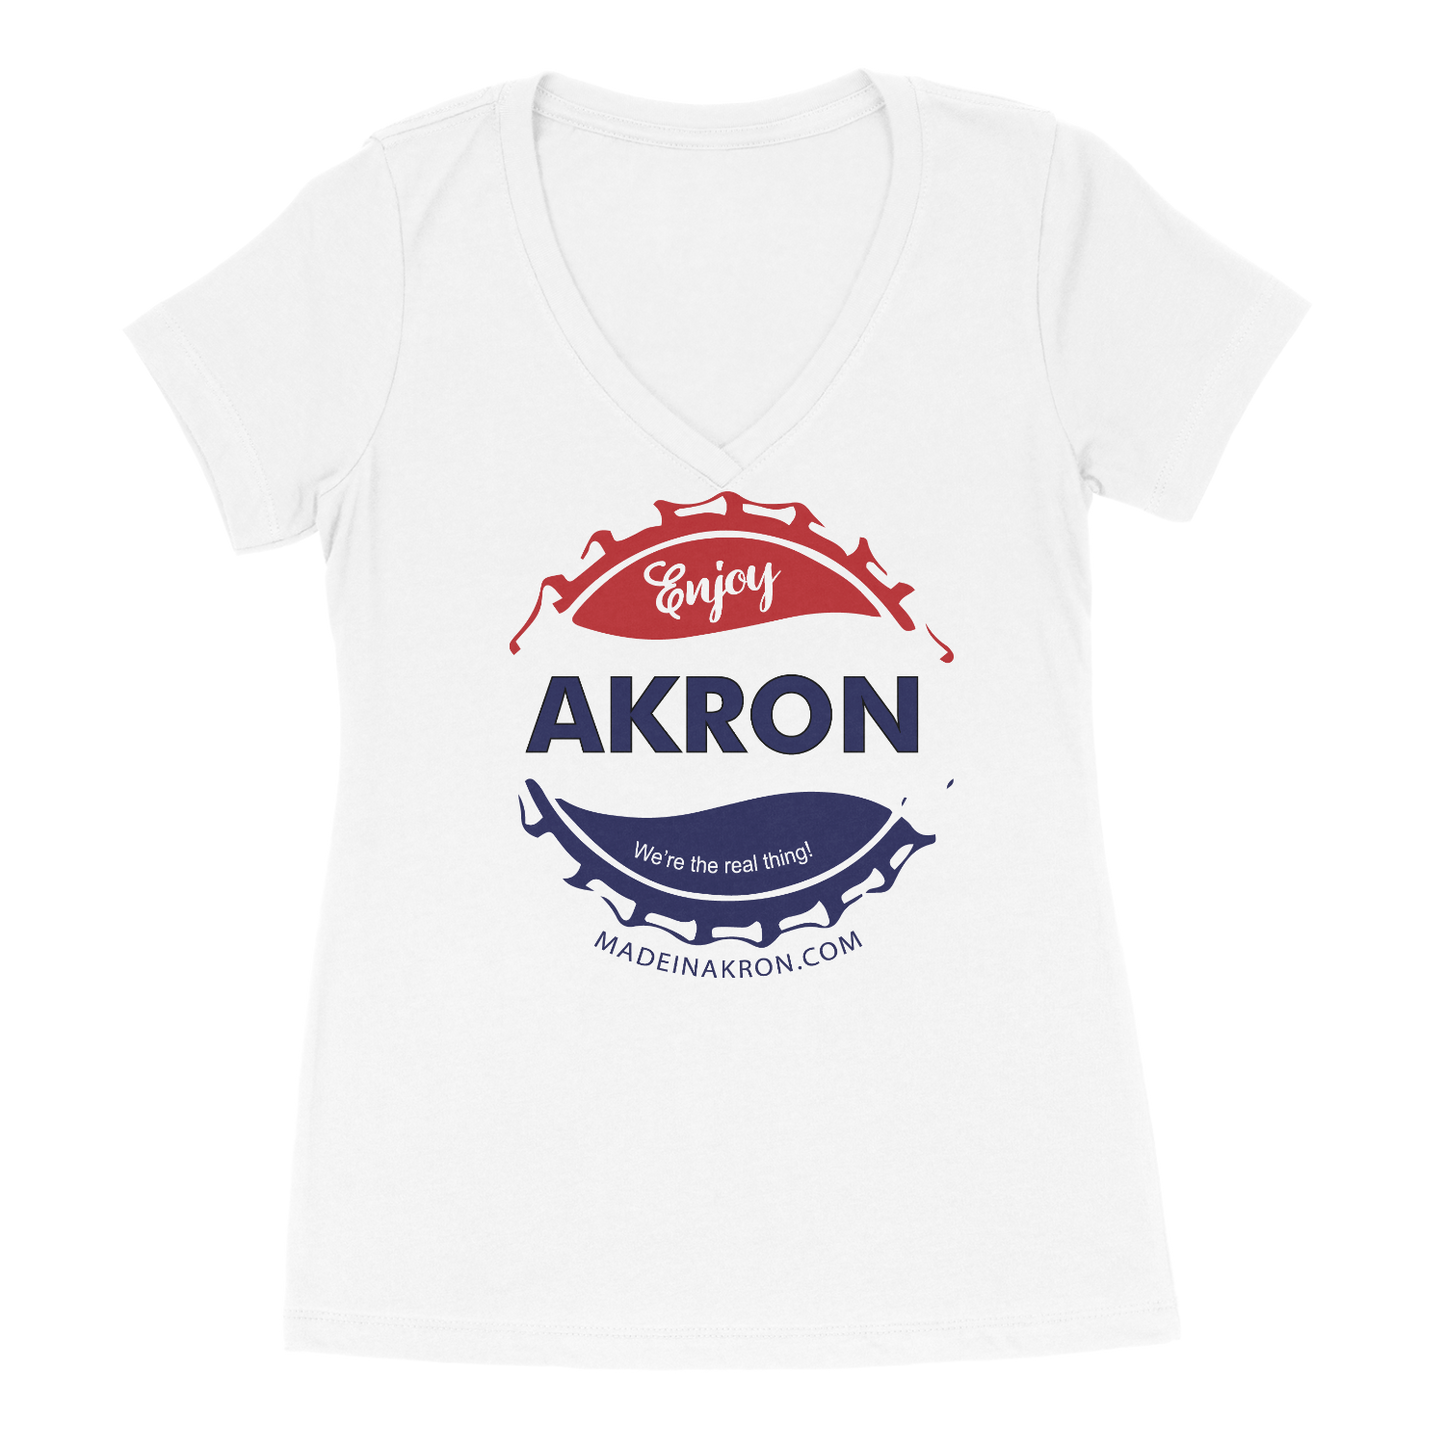 Enjoy Akron